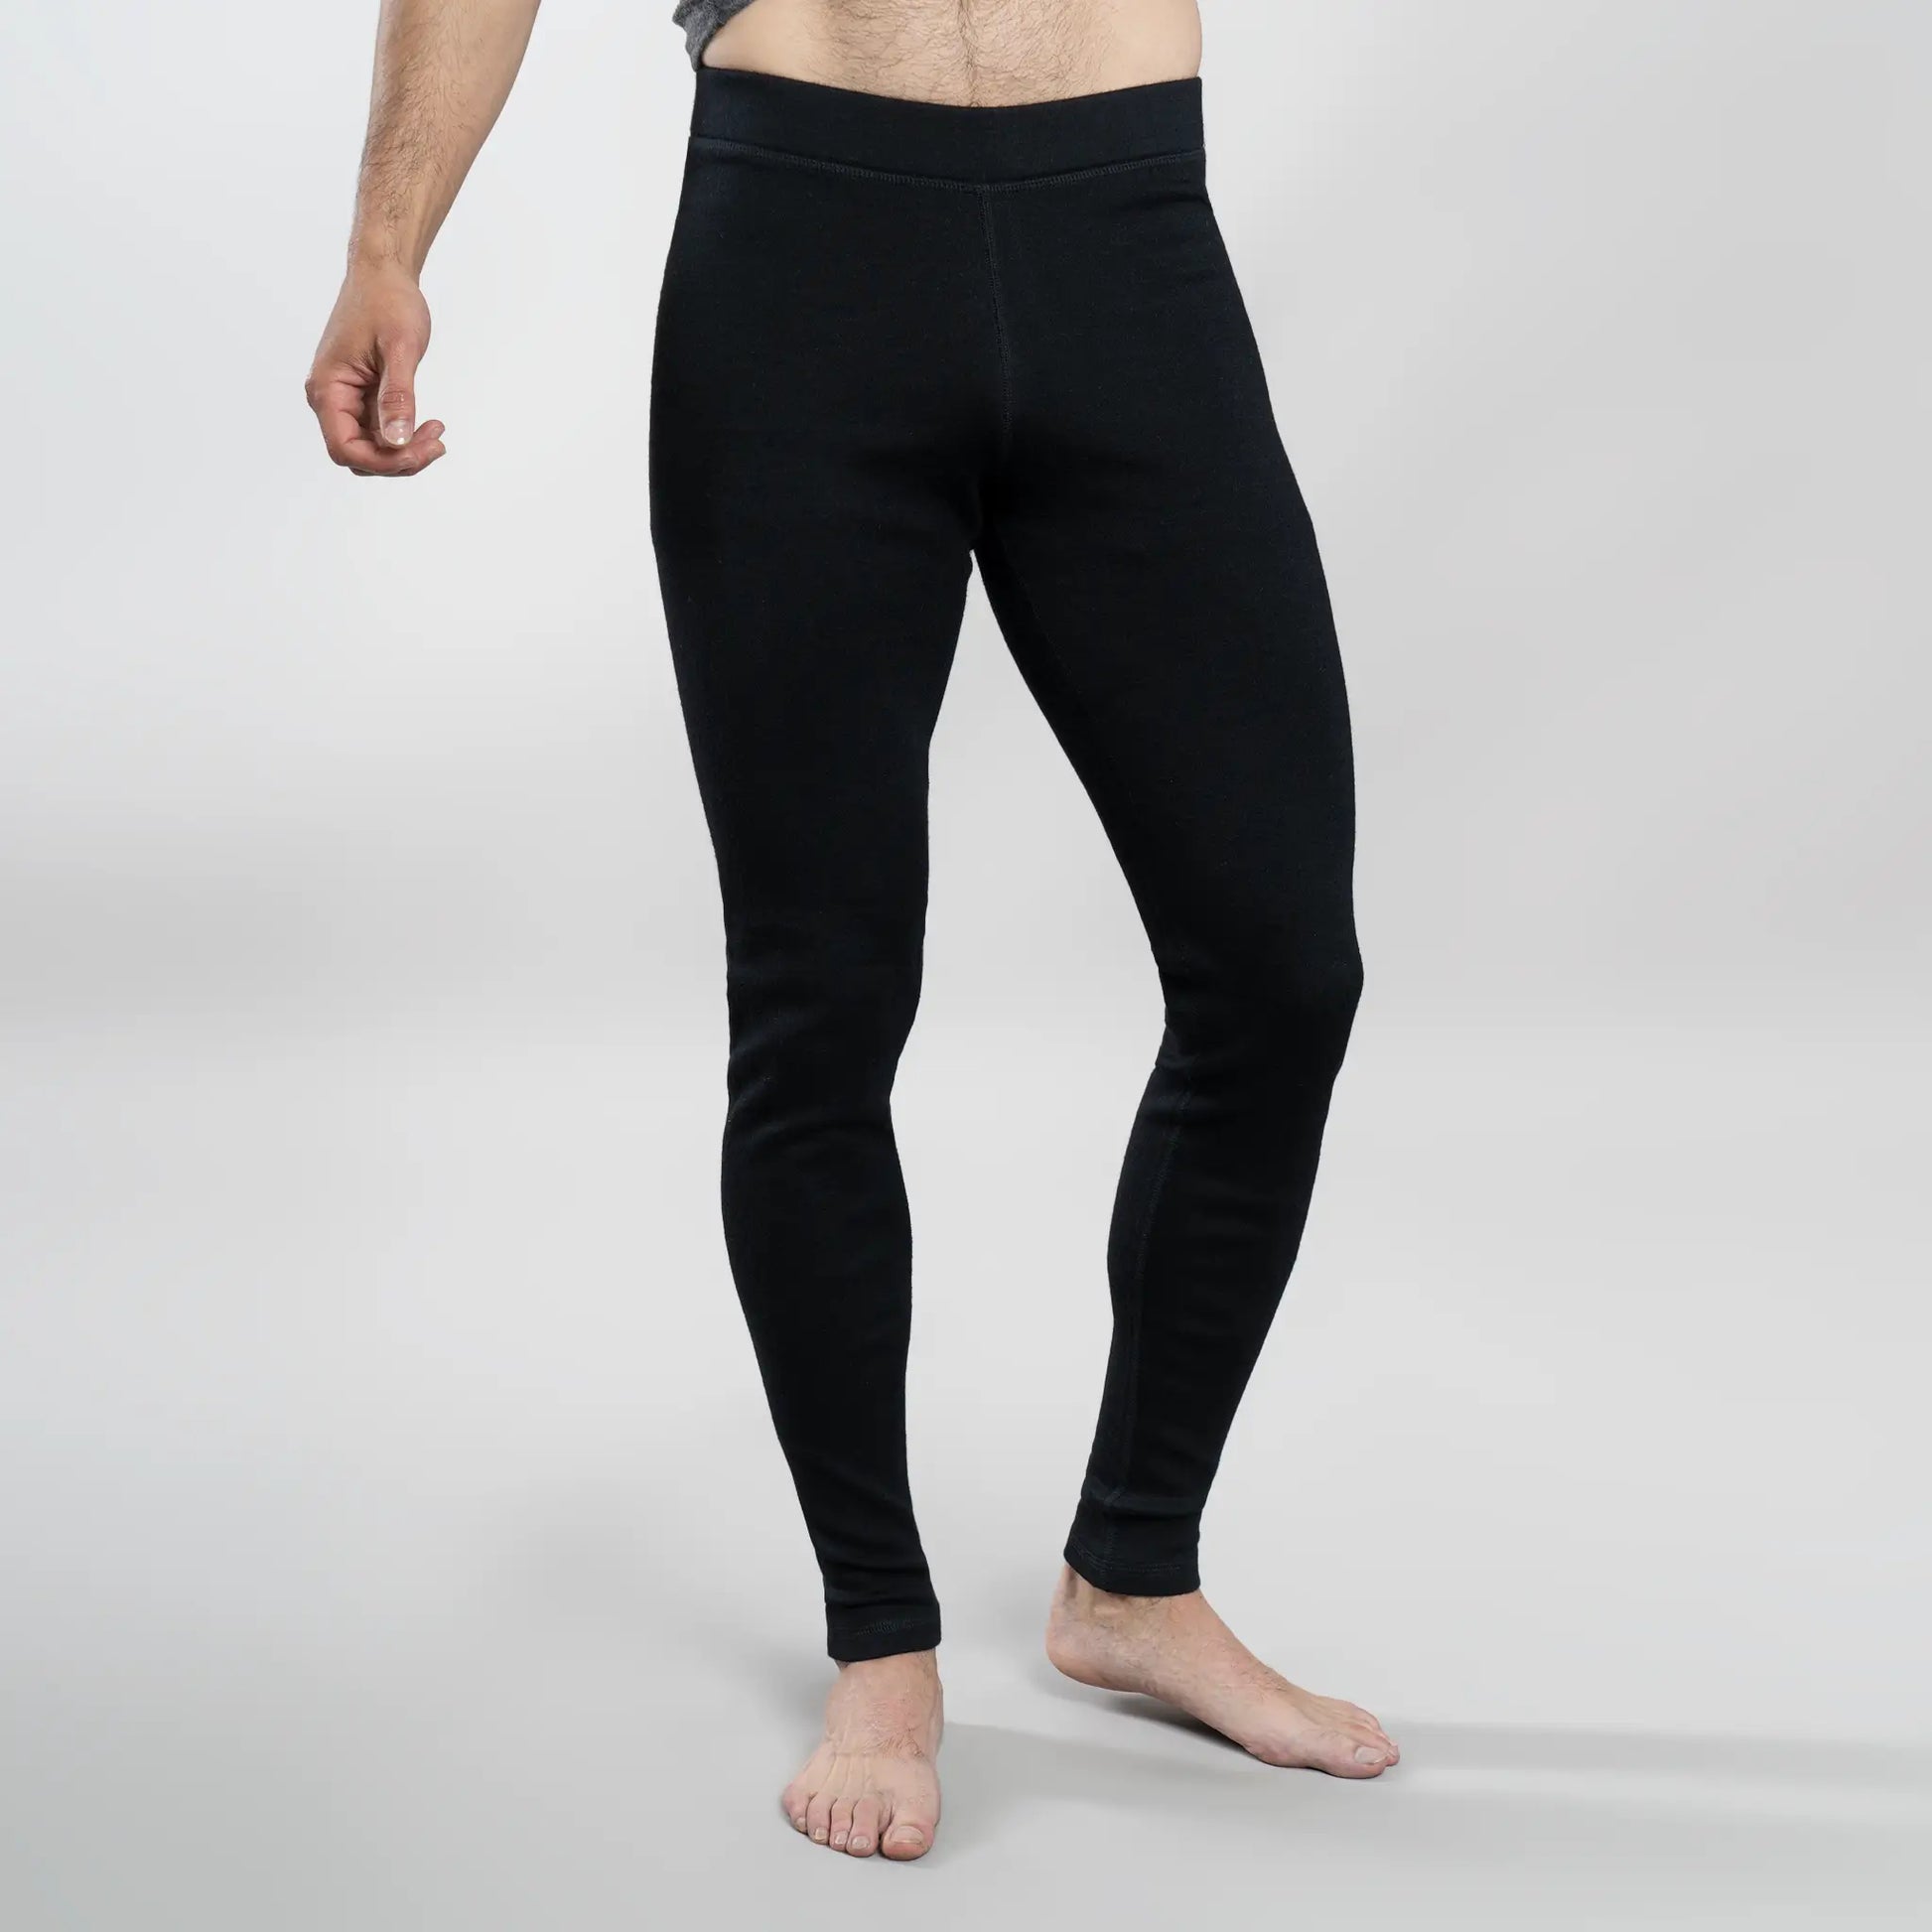 Ultra Light Merino Wool Leggings for Men - Winter Long Johns - Thermal  Underwear